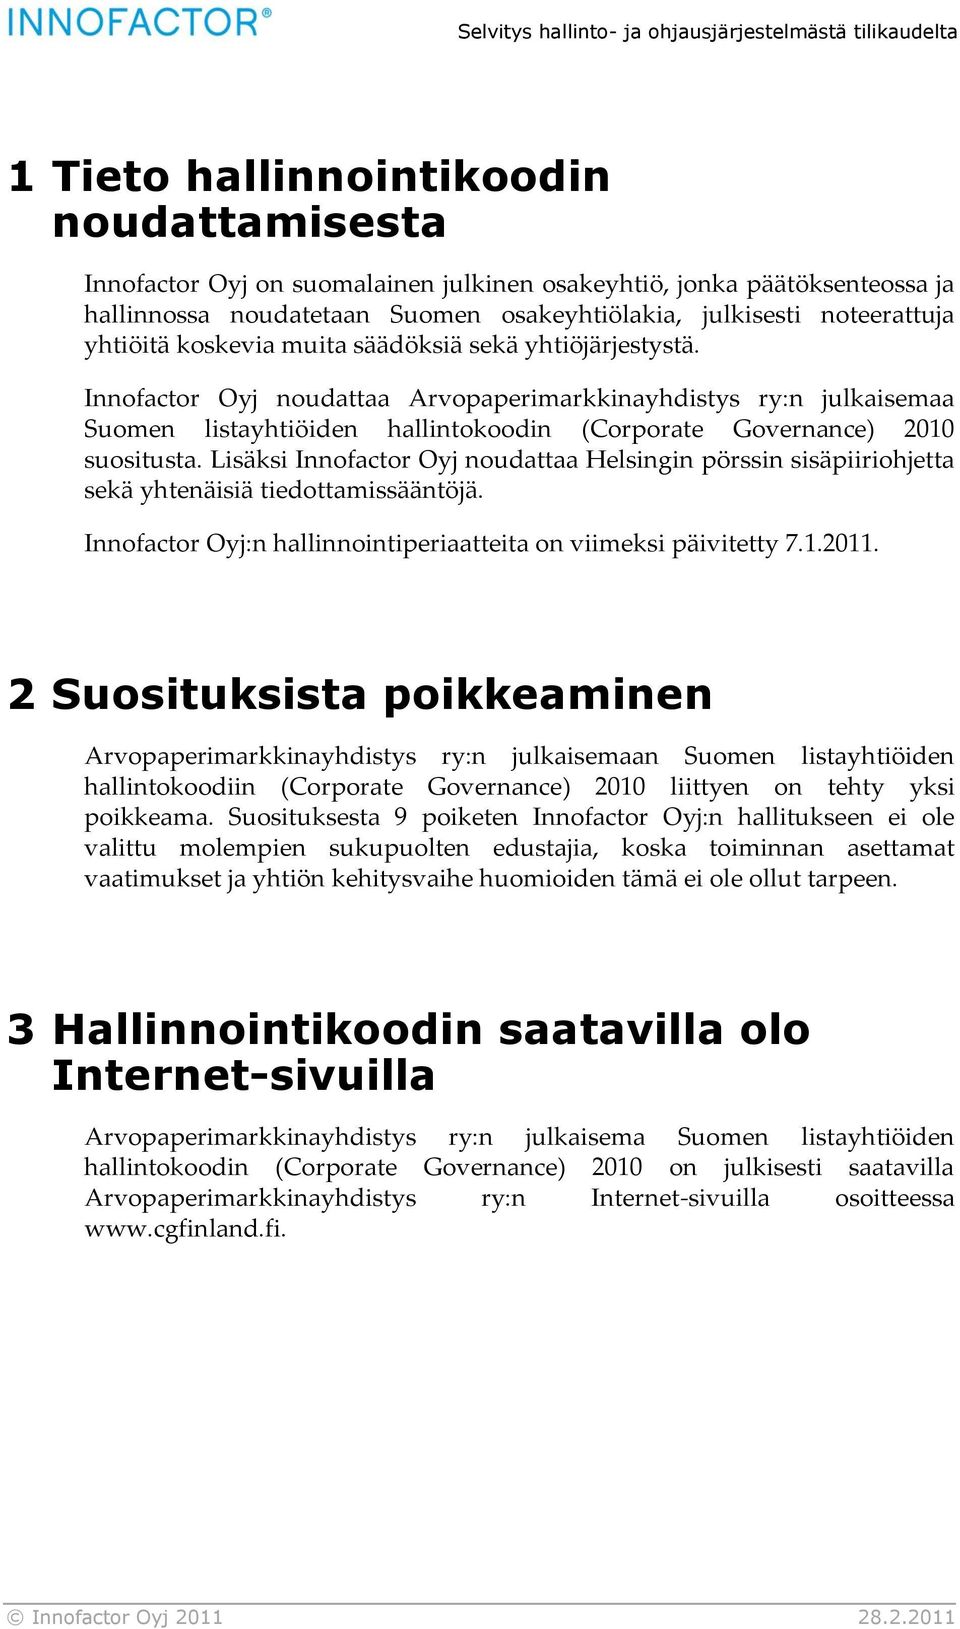 Innofactor Oyj noudattaa Arvopaperimarkkinayhdistys ry:n julkaisemaa Suomen listayhtiöiden hallintokoodin (Corporate Governance) 2010 suositusta.